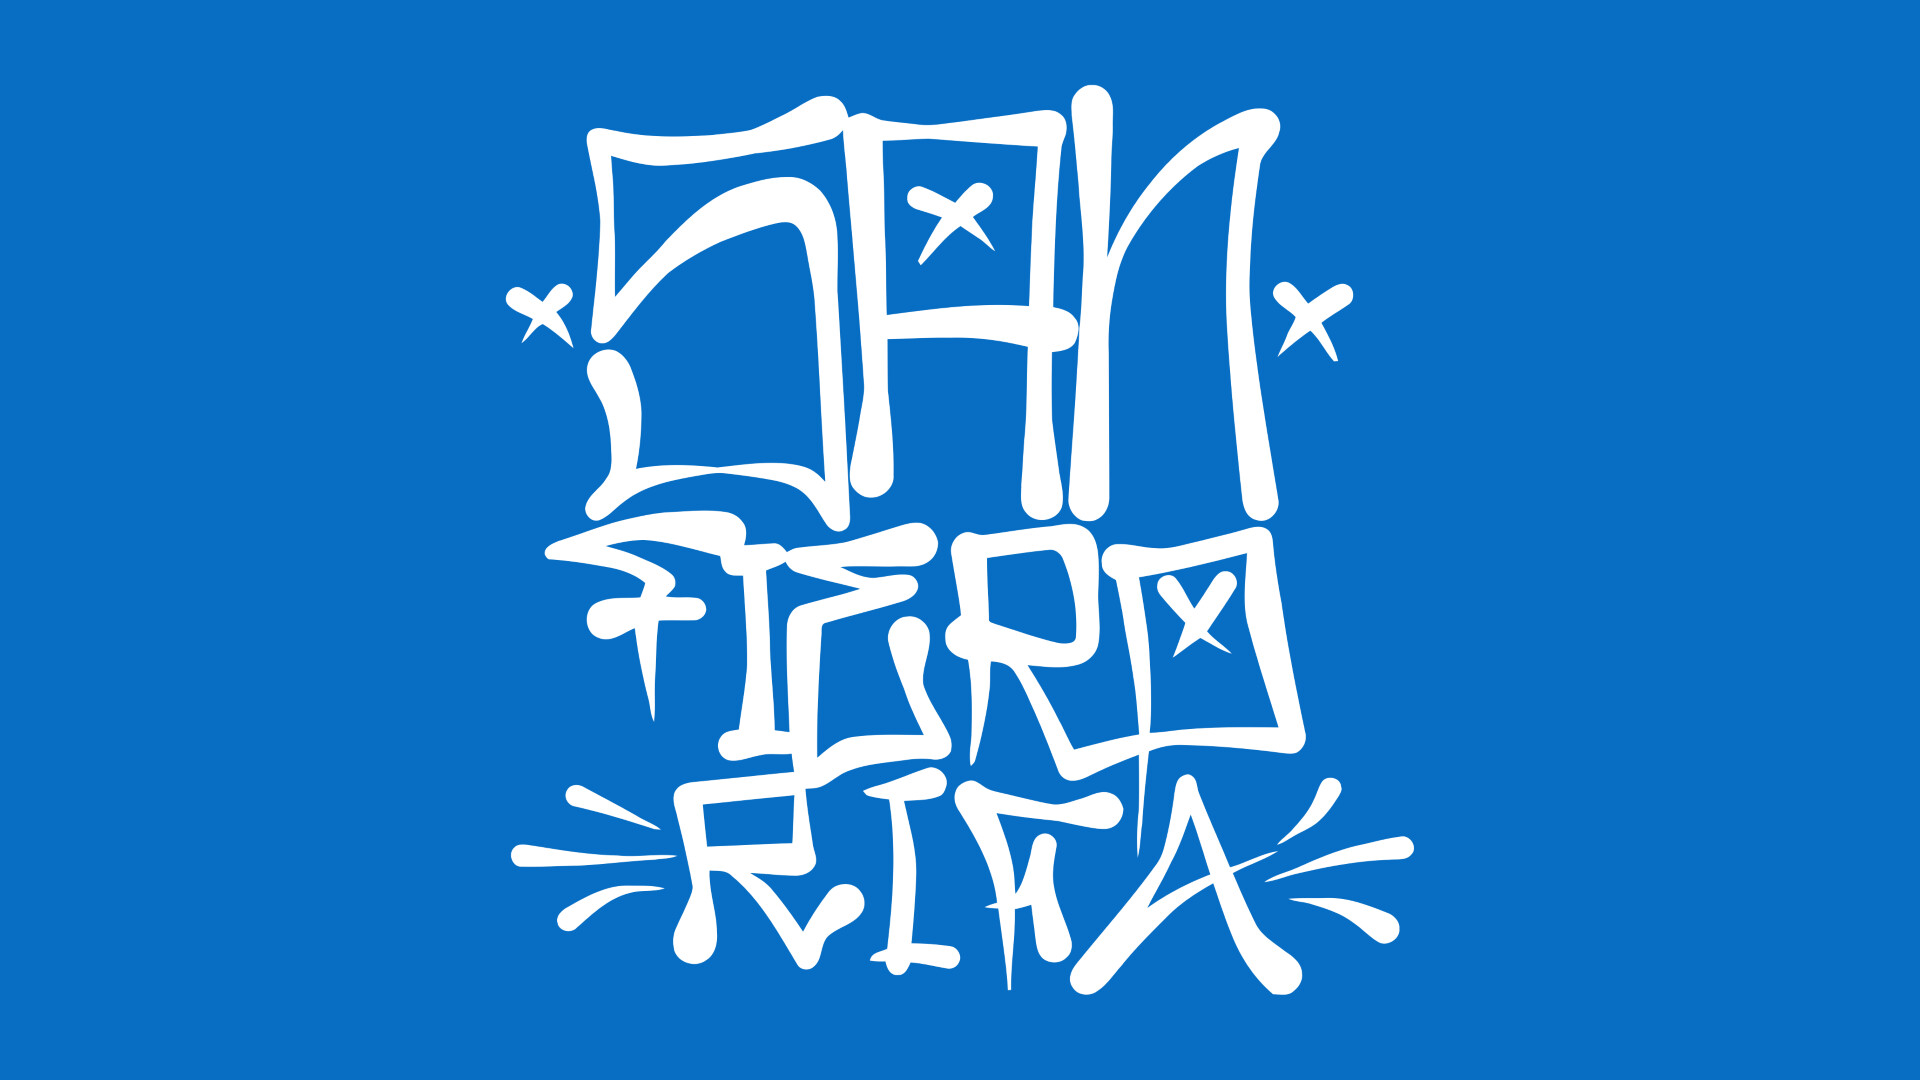 San Fierro Rifa tag (graffiti) 